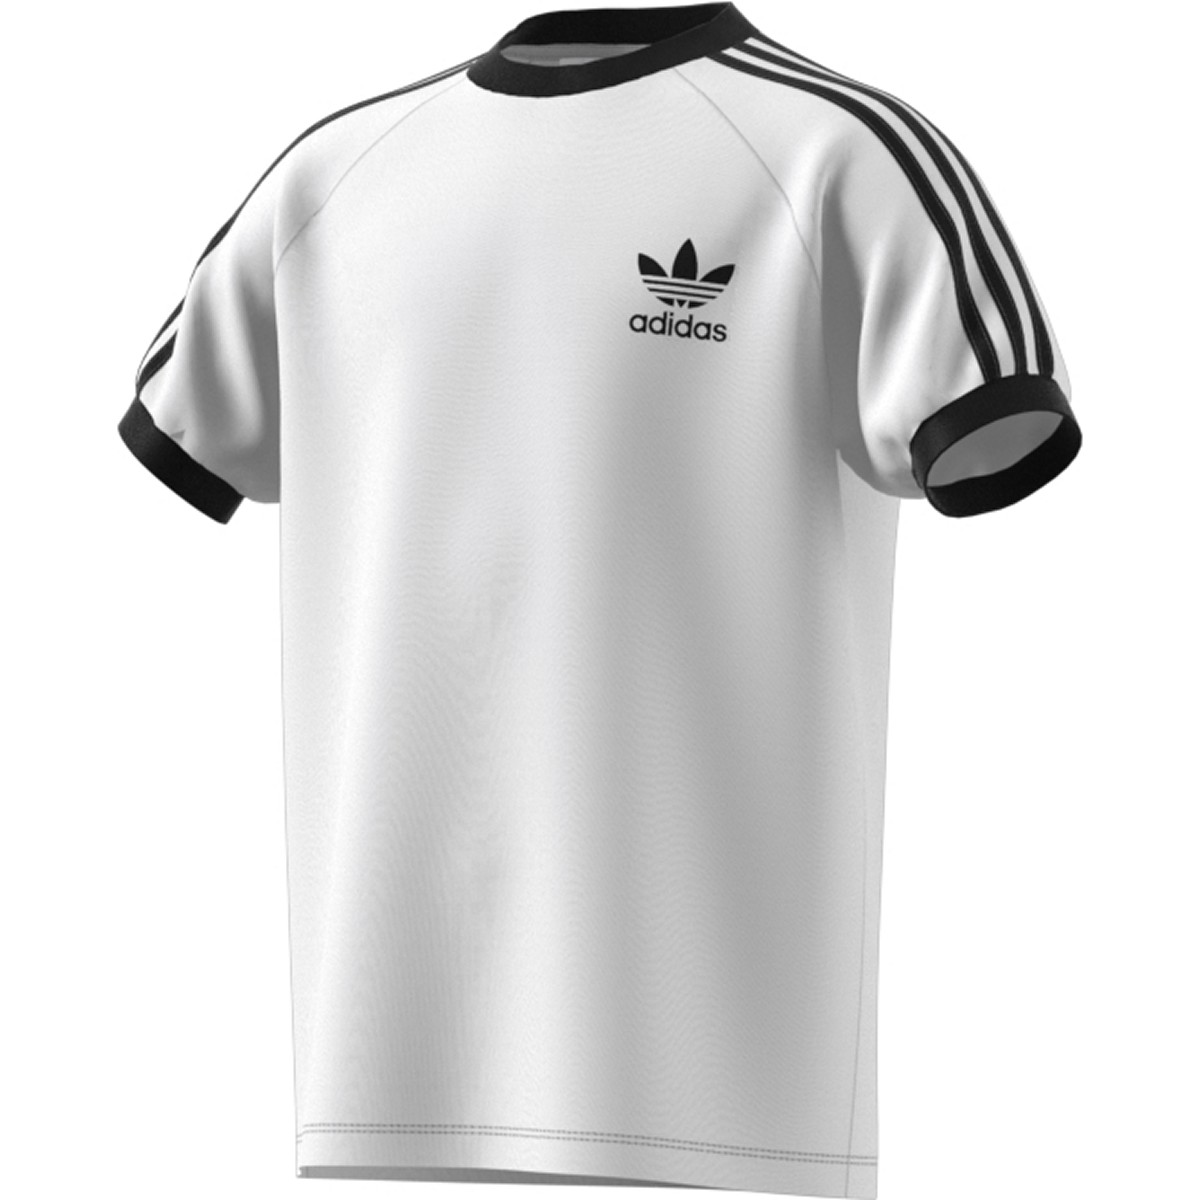 Adidas Originals 3-Stipes Kids T-Shirt White-Black dv2901 | eBay